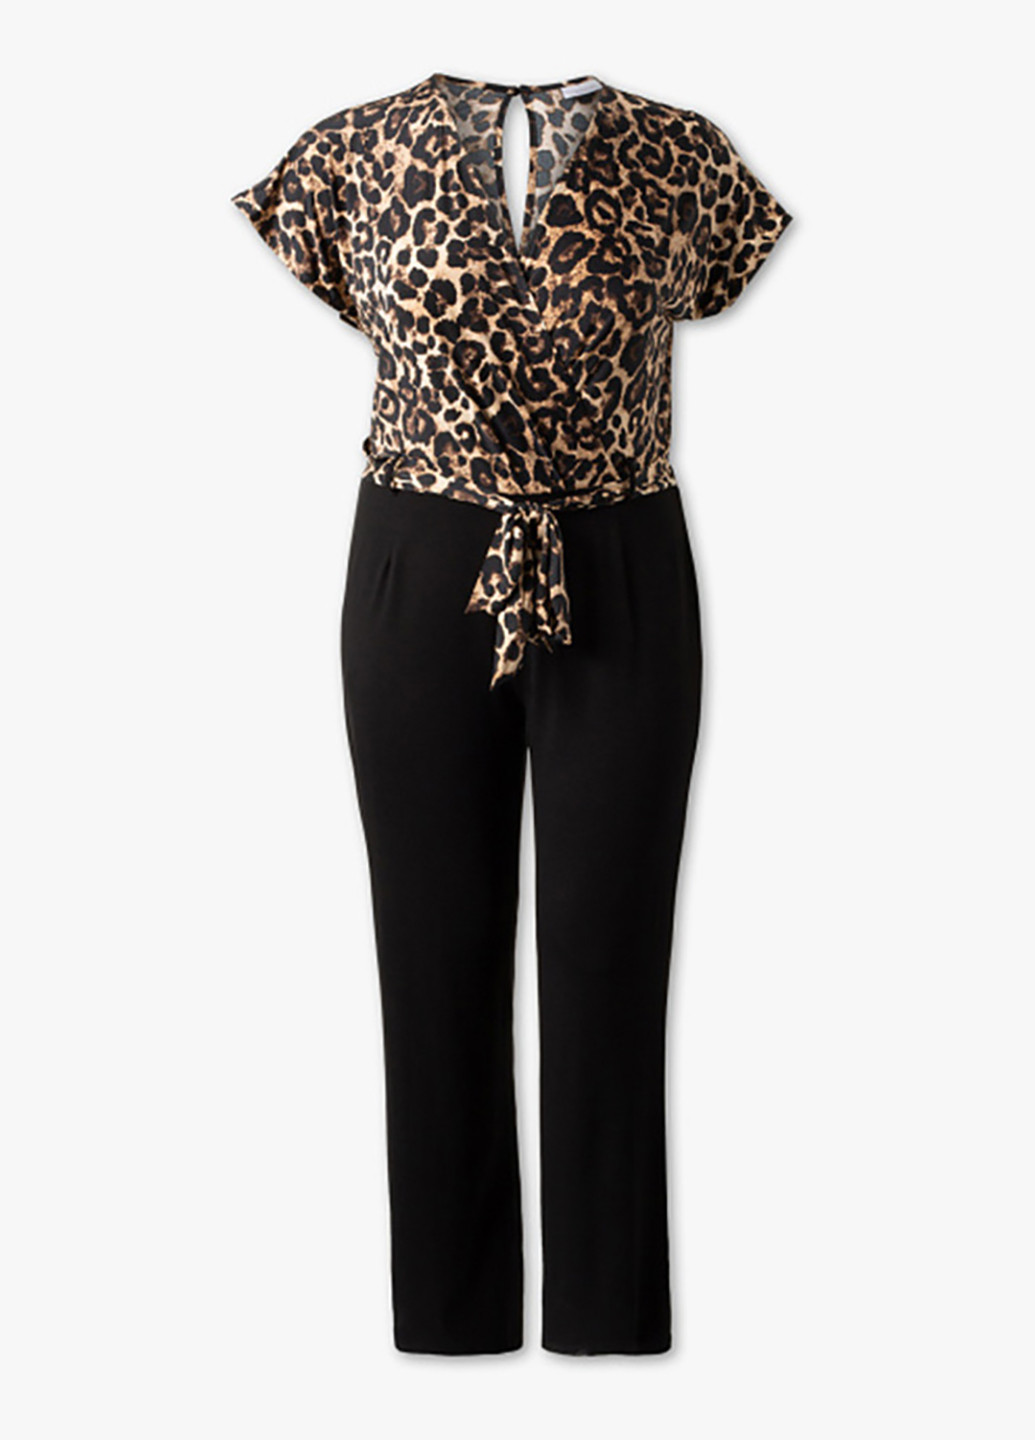 Комбинезон C&A комбинезон-брюки леопардовый чёрный кэжуал вискоза